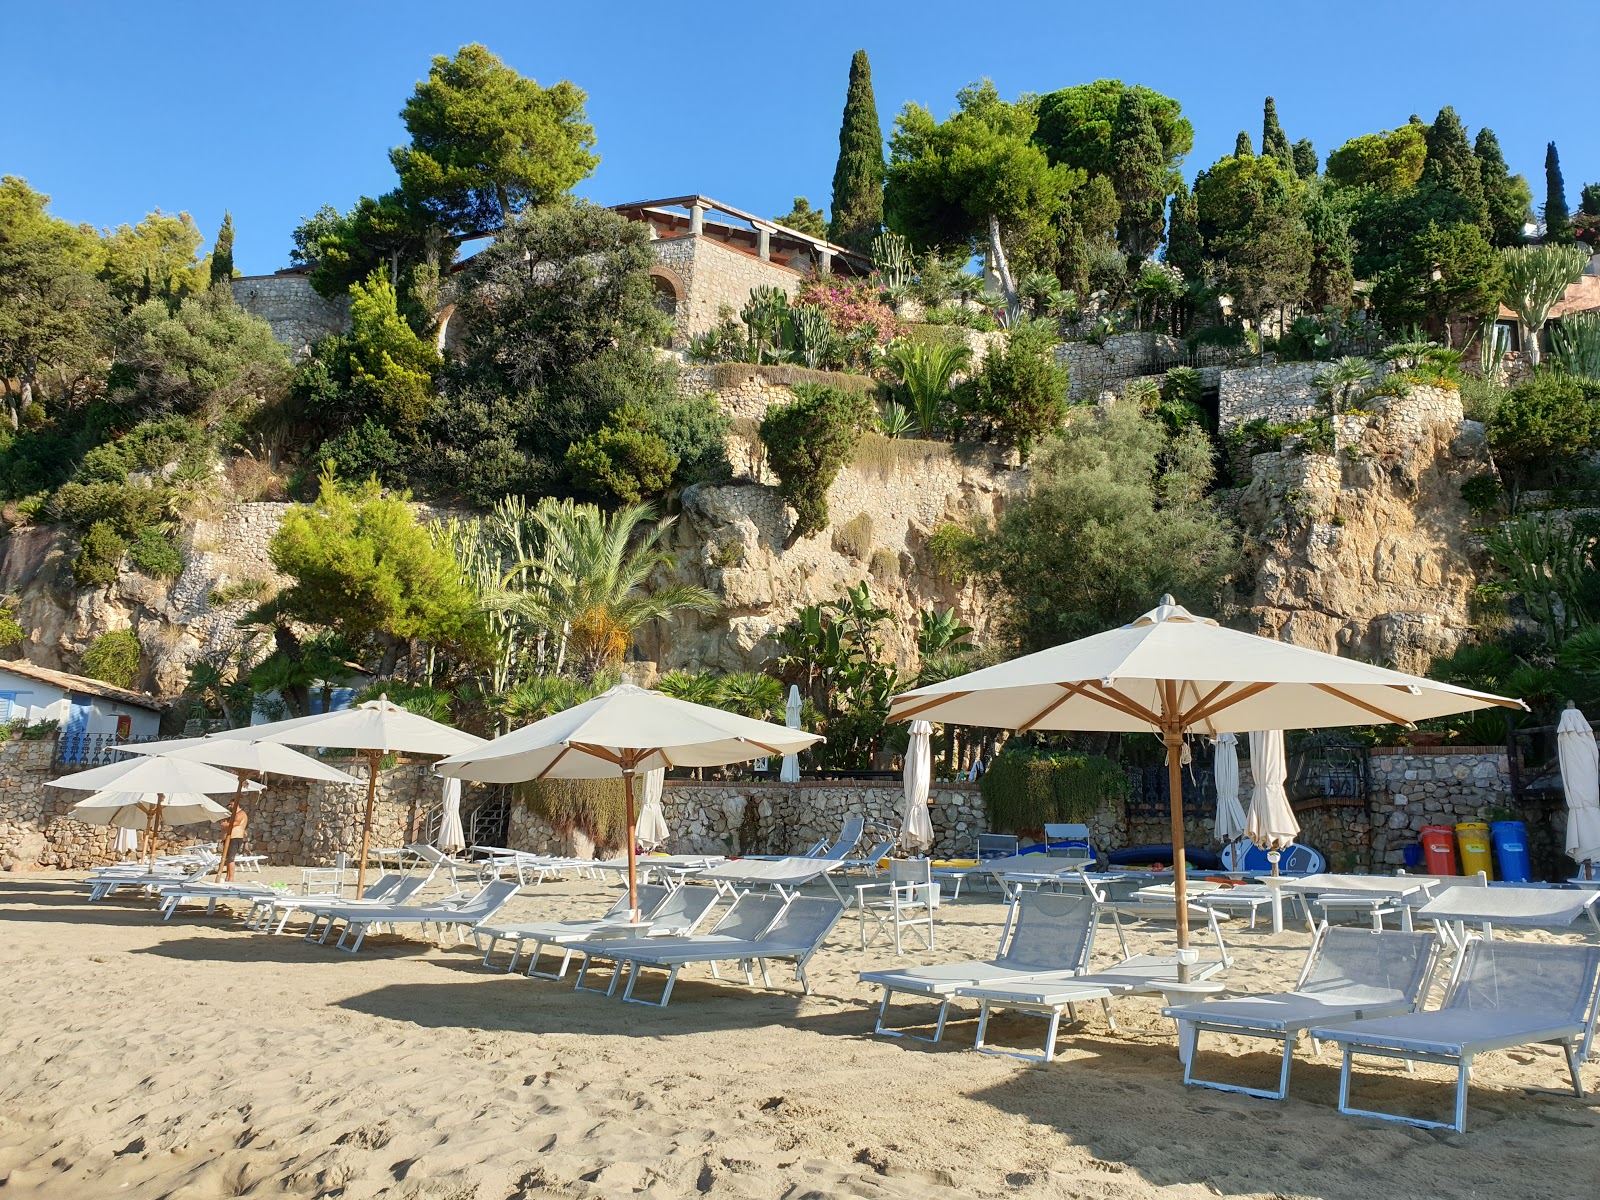 Fotografija Spiaggia dell'Arenauta nahaja se v naravnem okolju